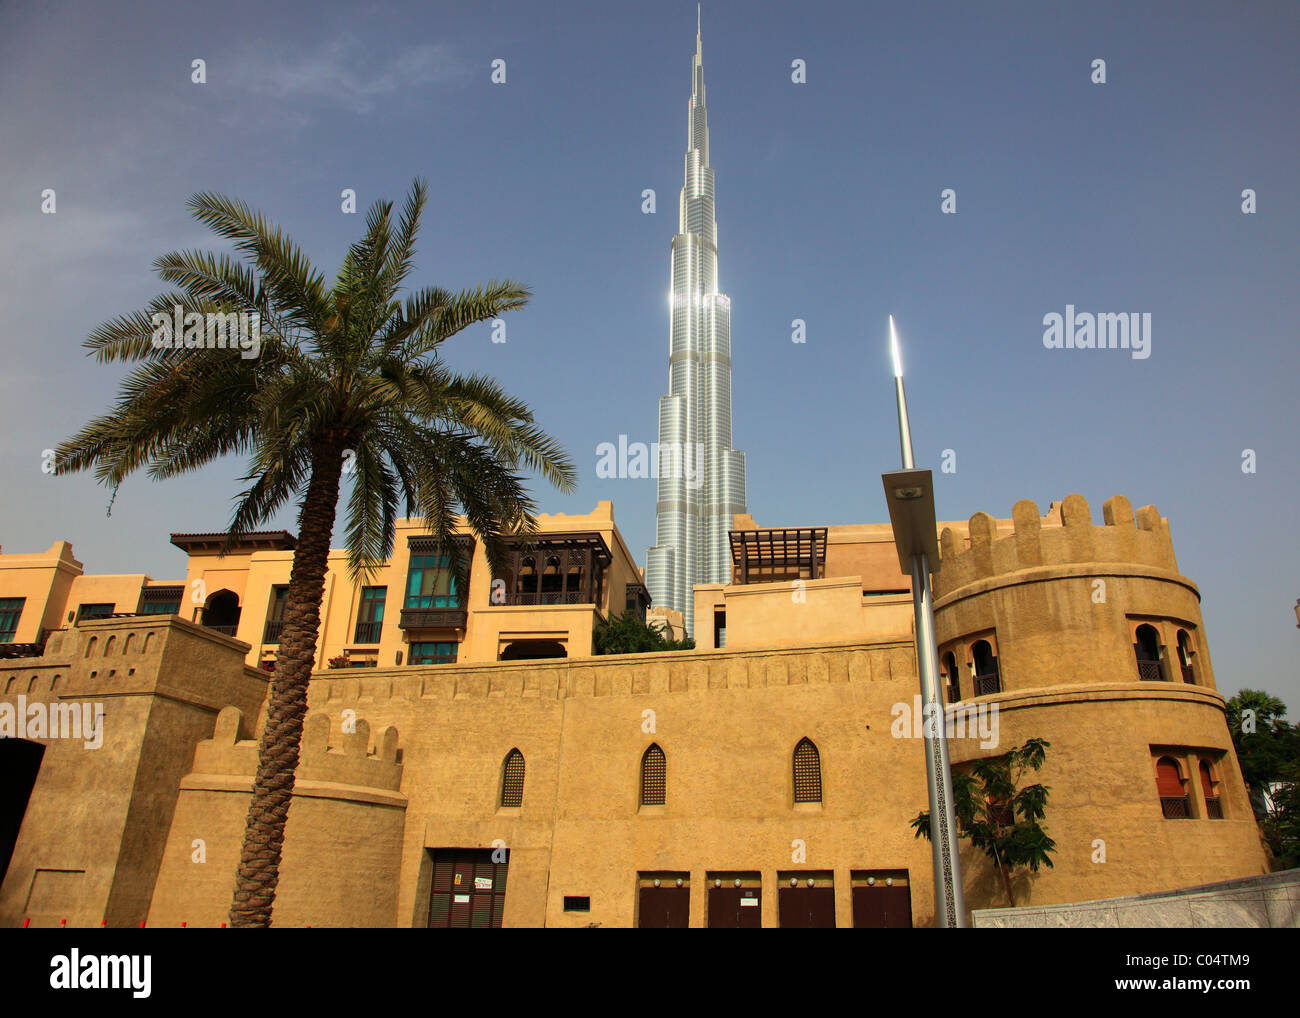 United Arab Emirates, Dubai, Burj Khalifa; The Palace Hotel, Stock Photo